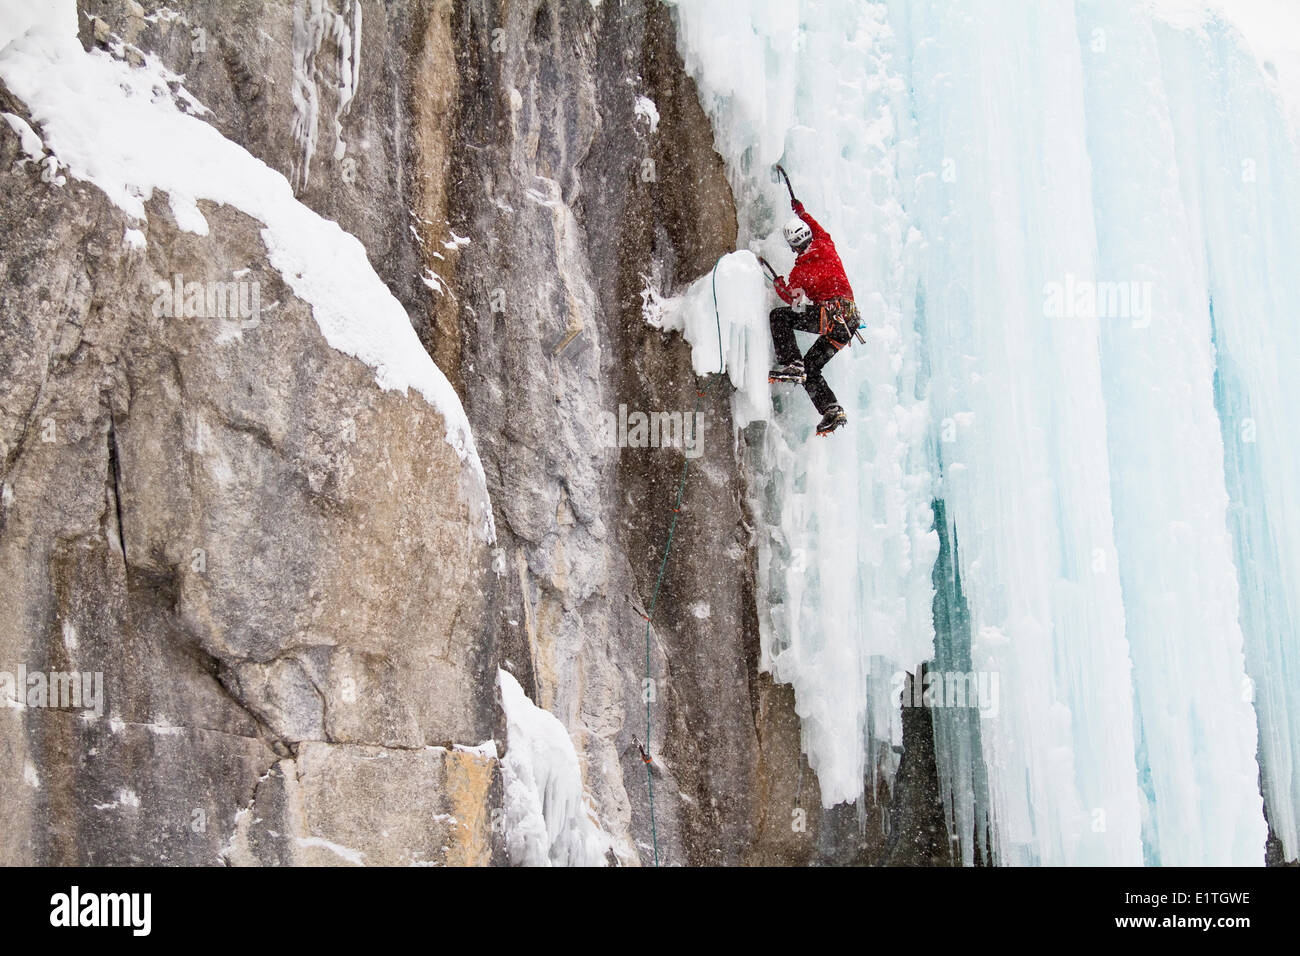 Jeune homme grimpe dans un mélange de glace et de roche tandis que l'escalade sur glace dans le parc national de Banff, près de Banff, Alberta, Canada. Banque D'Images